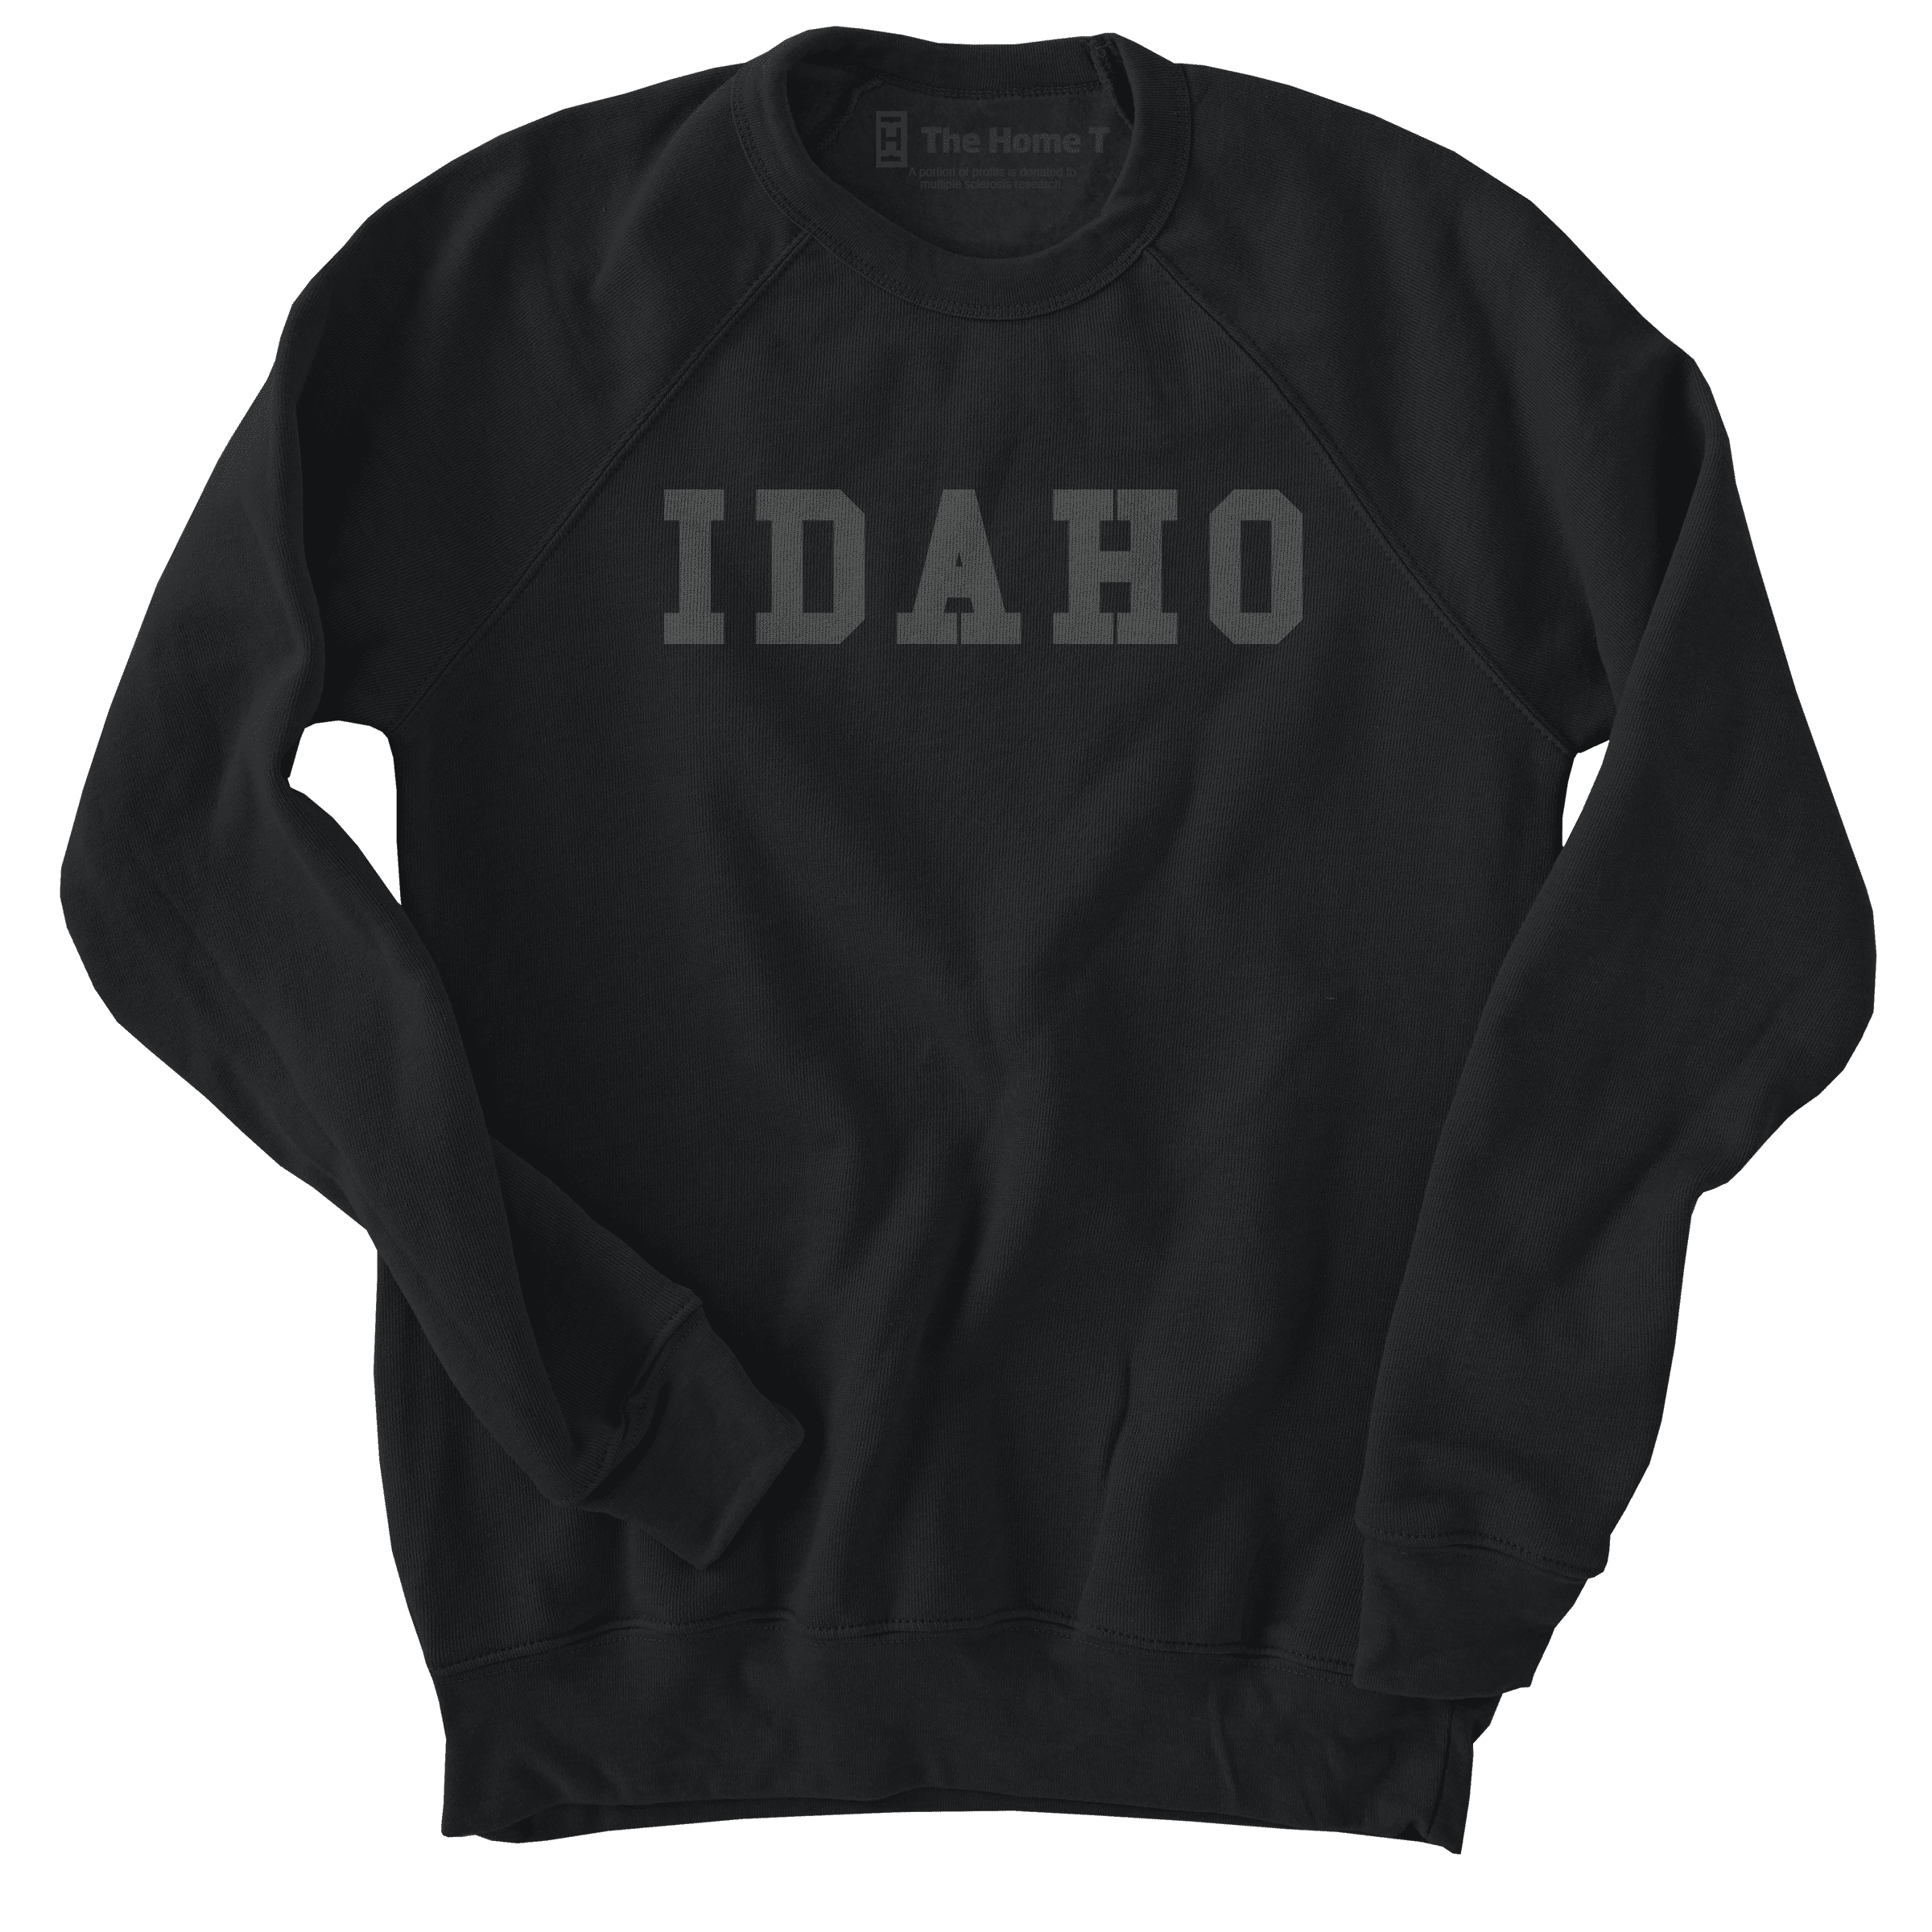 Idaho Black on Black